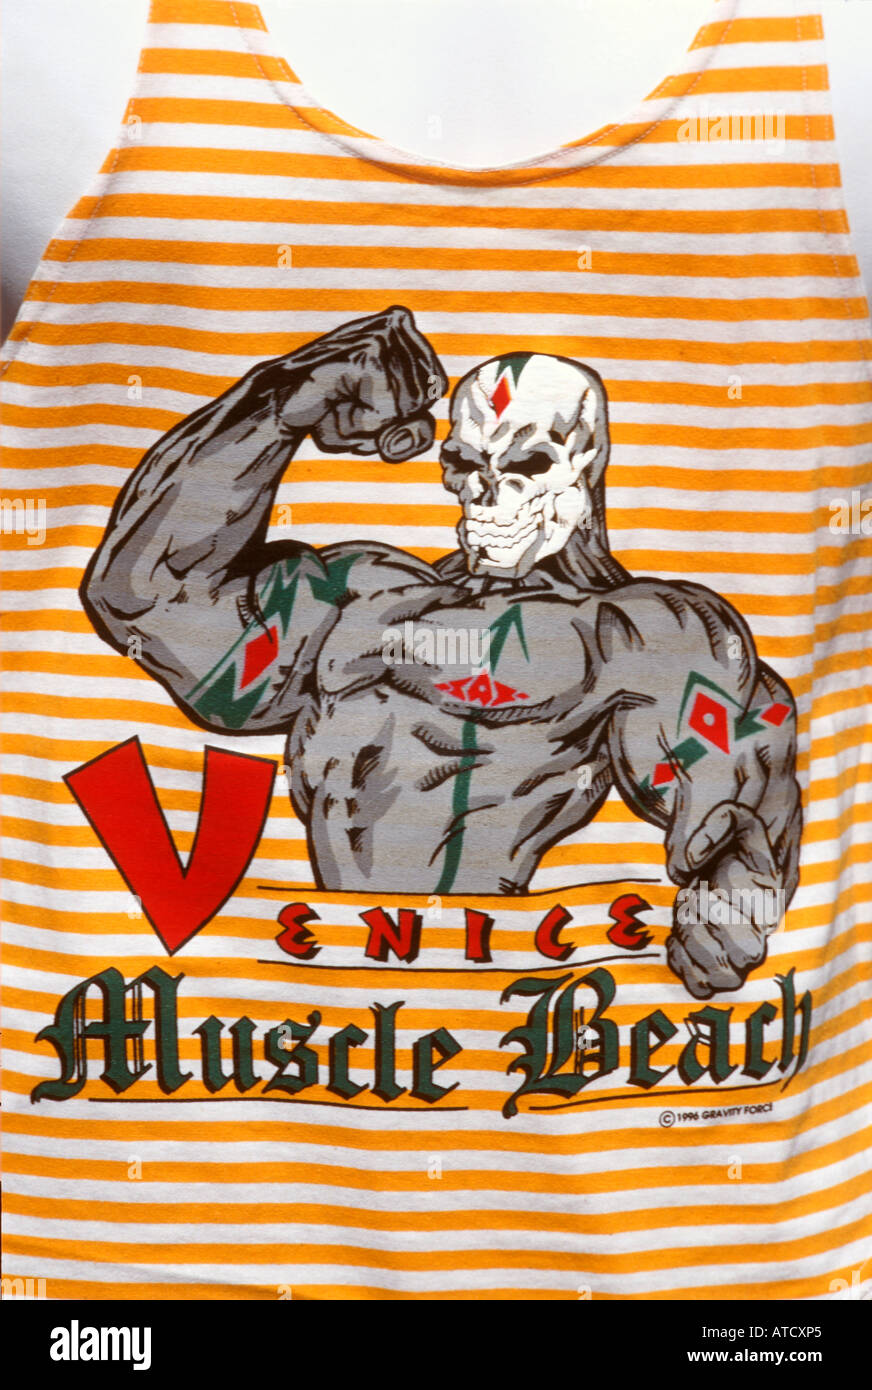 Muscle Beach une chemise, Venice Beach, Santa Monica, Los Angeles, Californie, USA Banque D'Images